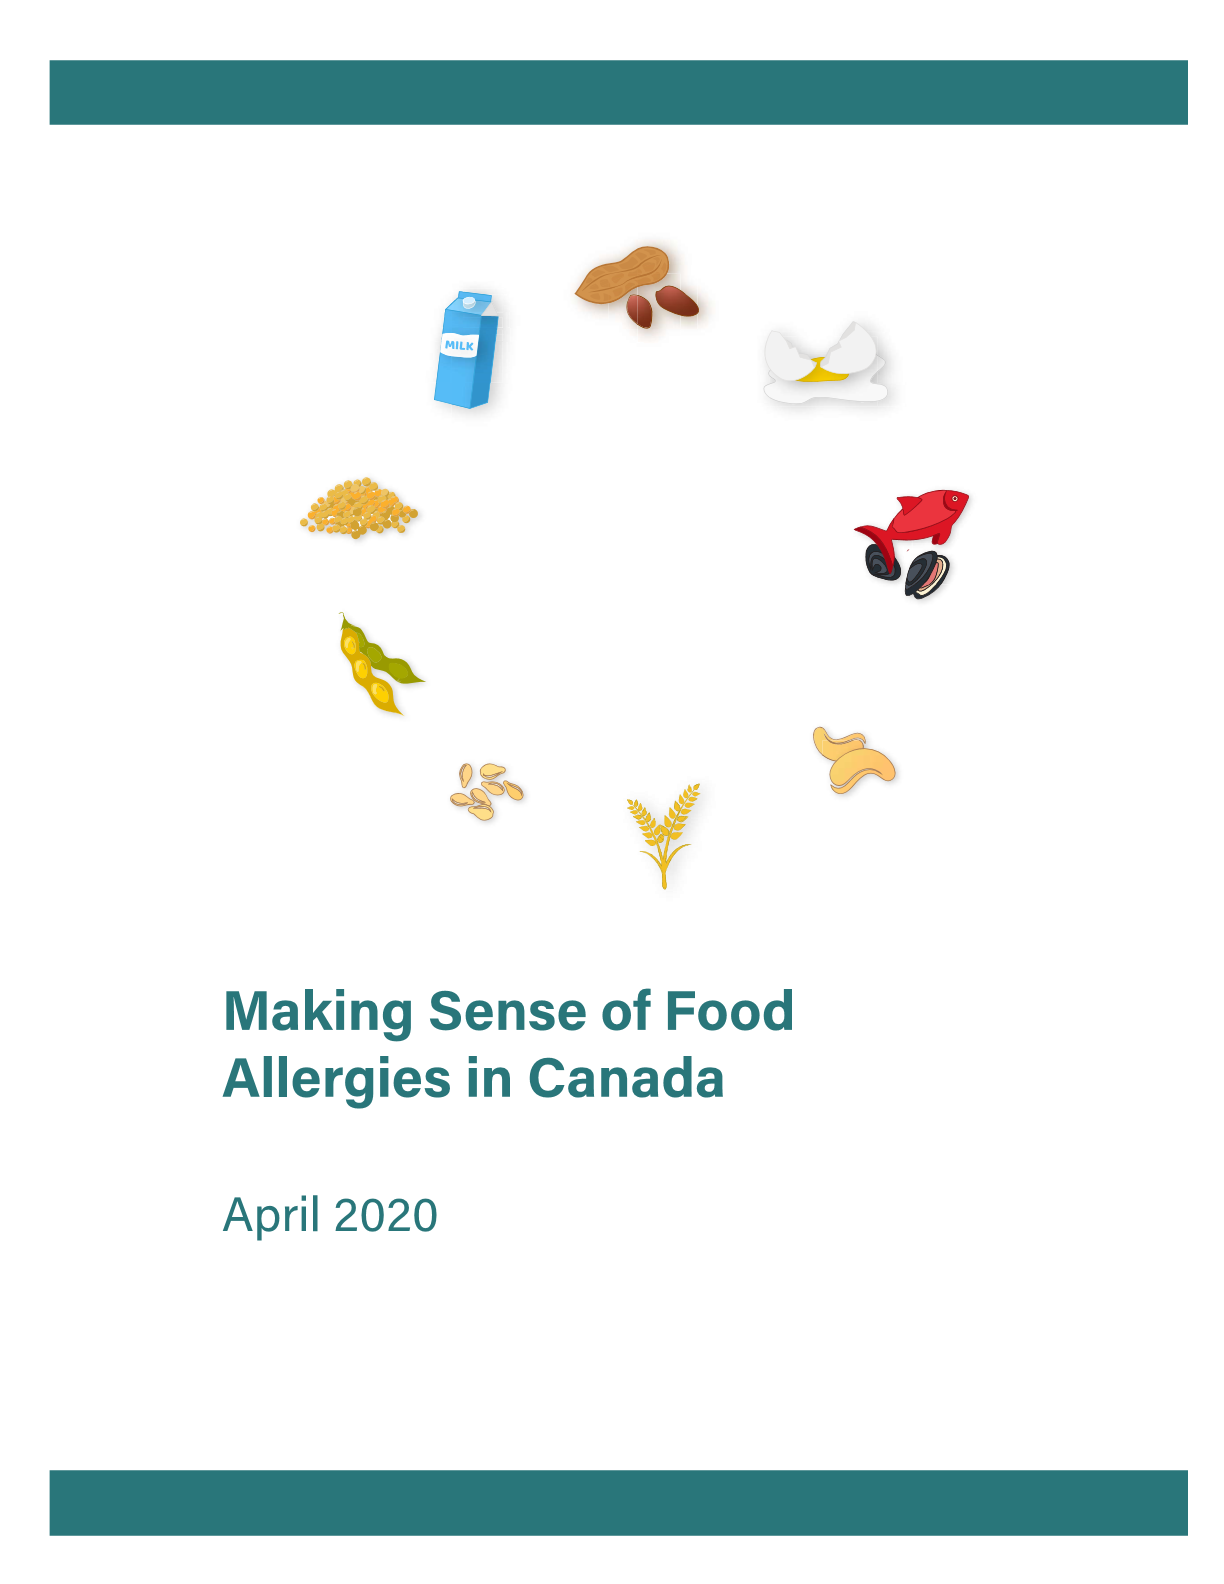 Making Sense of Food Allergies report